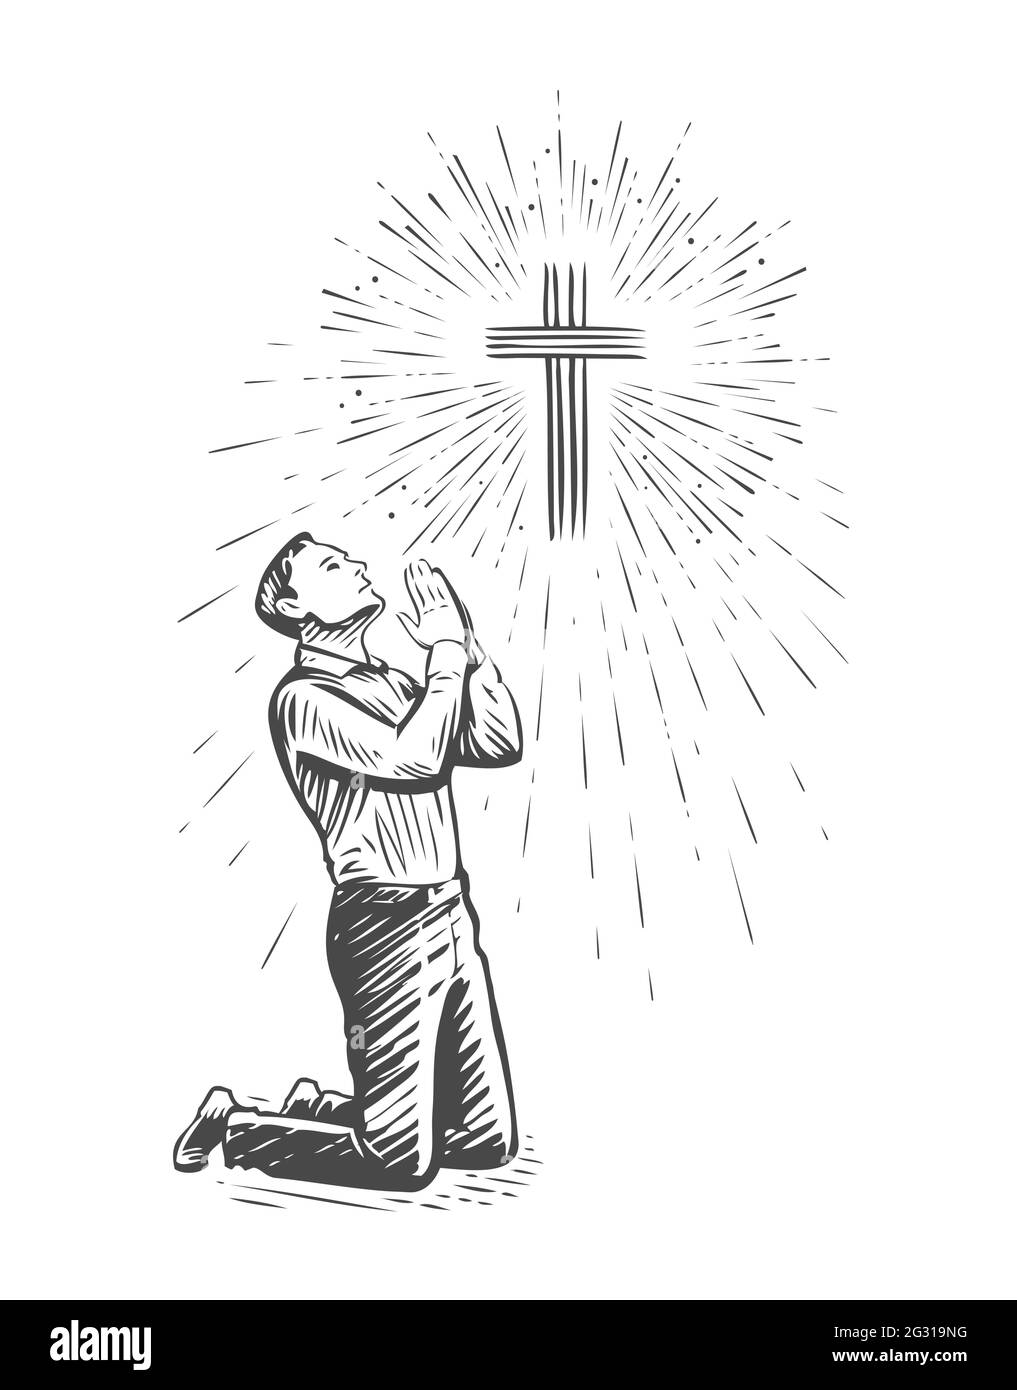 Esquisse de prière humaine avec les mains pliées dans le culte. Illustration vectorielle dessinée à la main Illustration de Vecteur